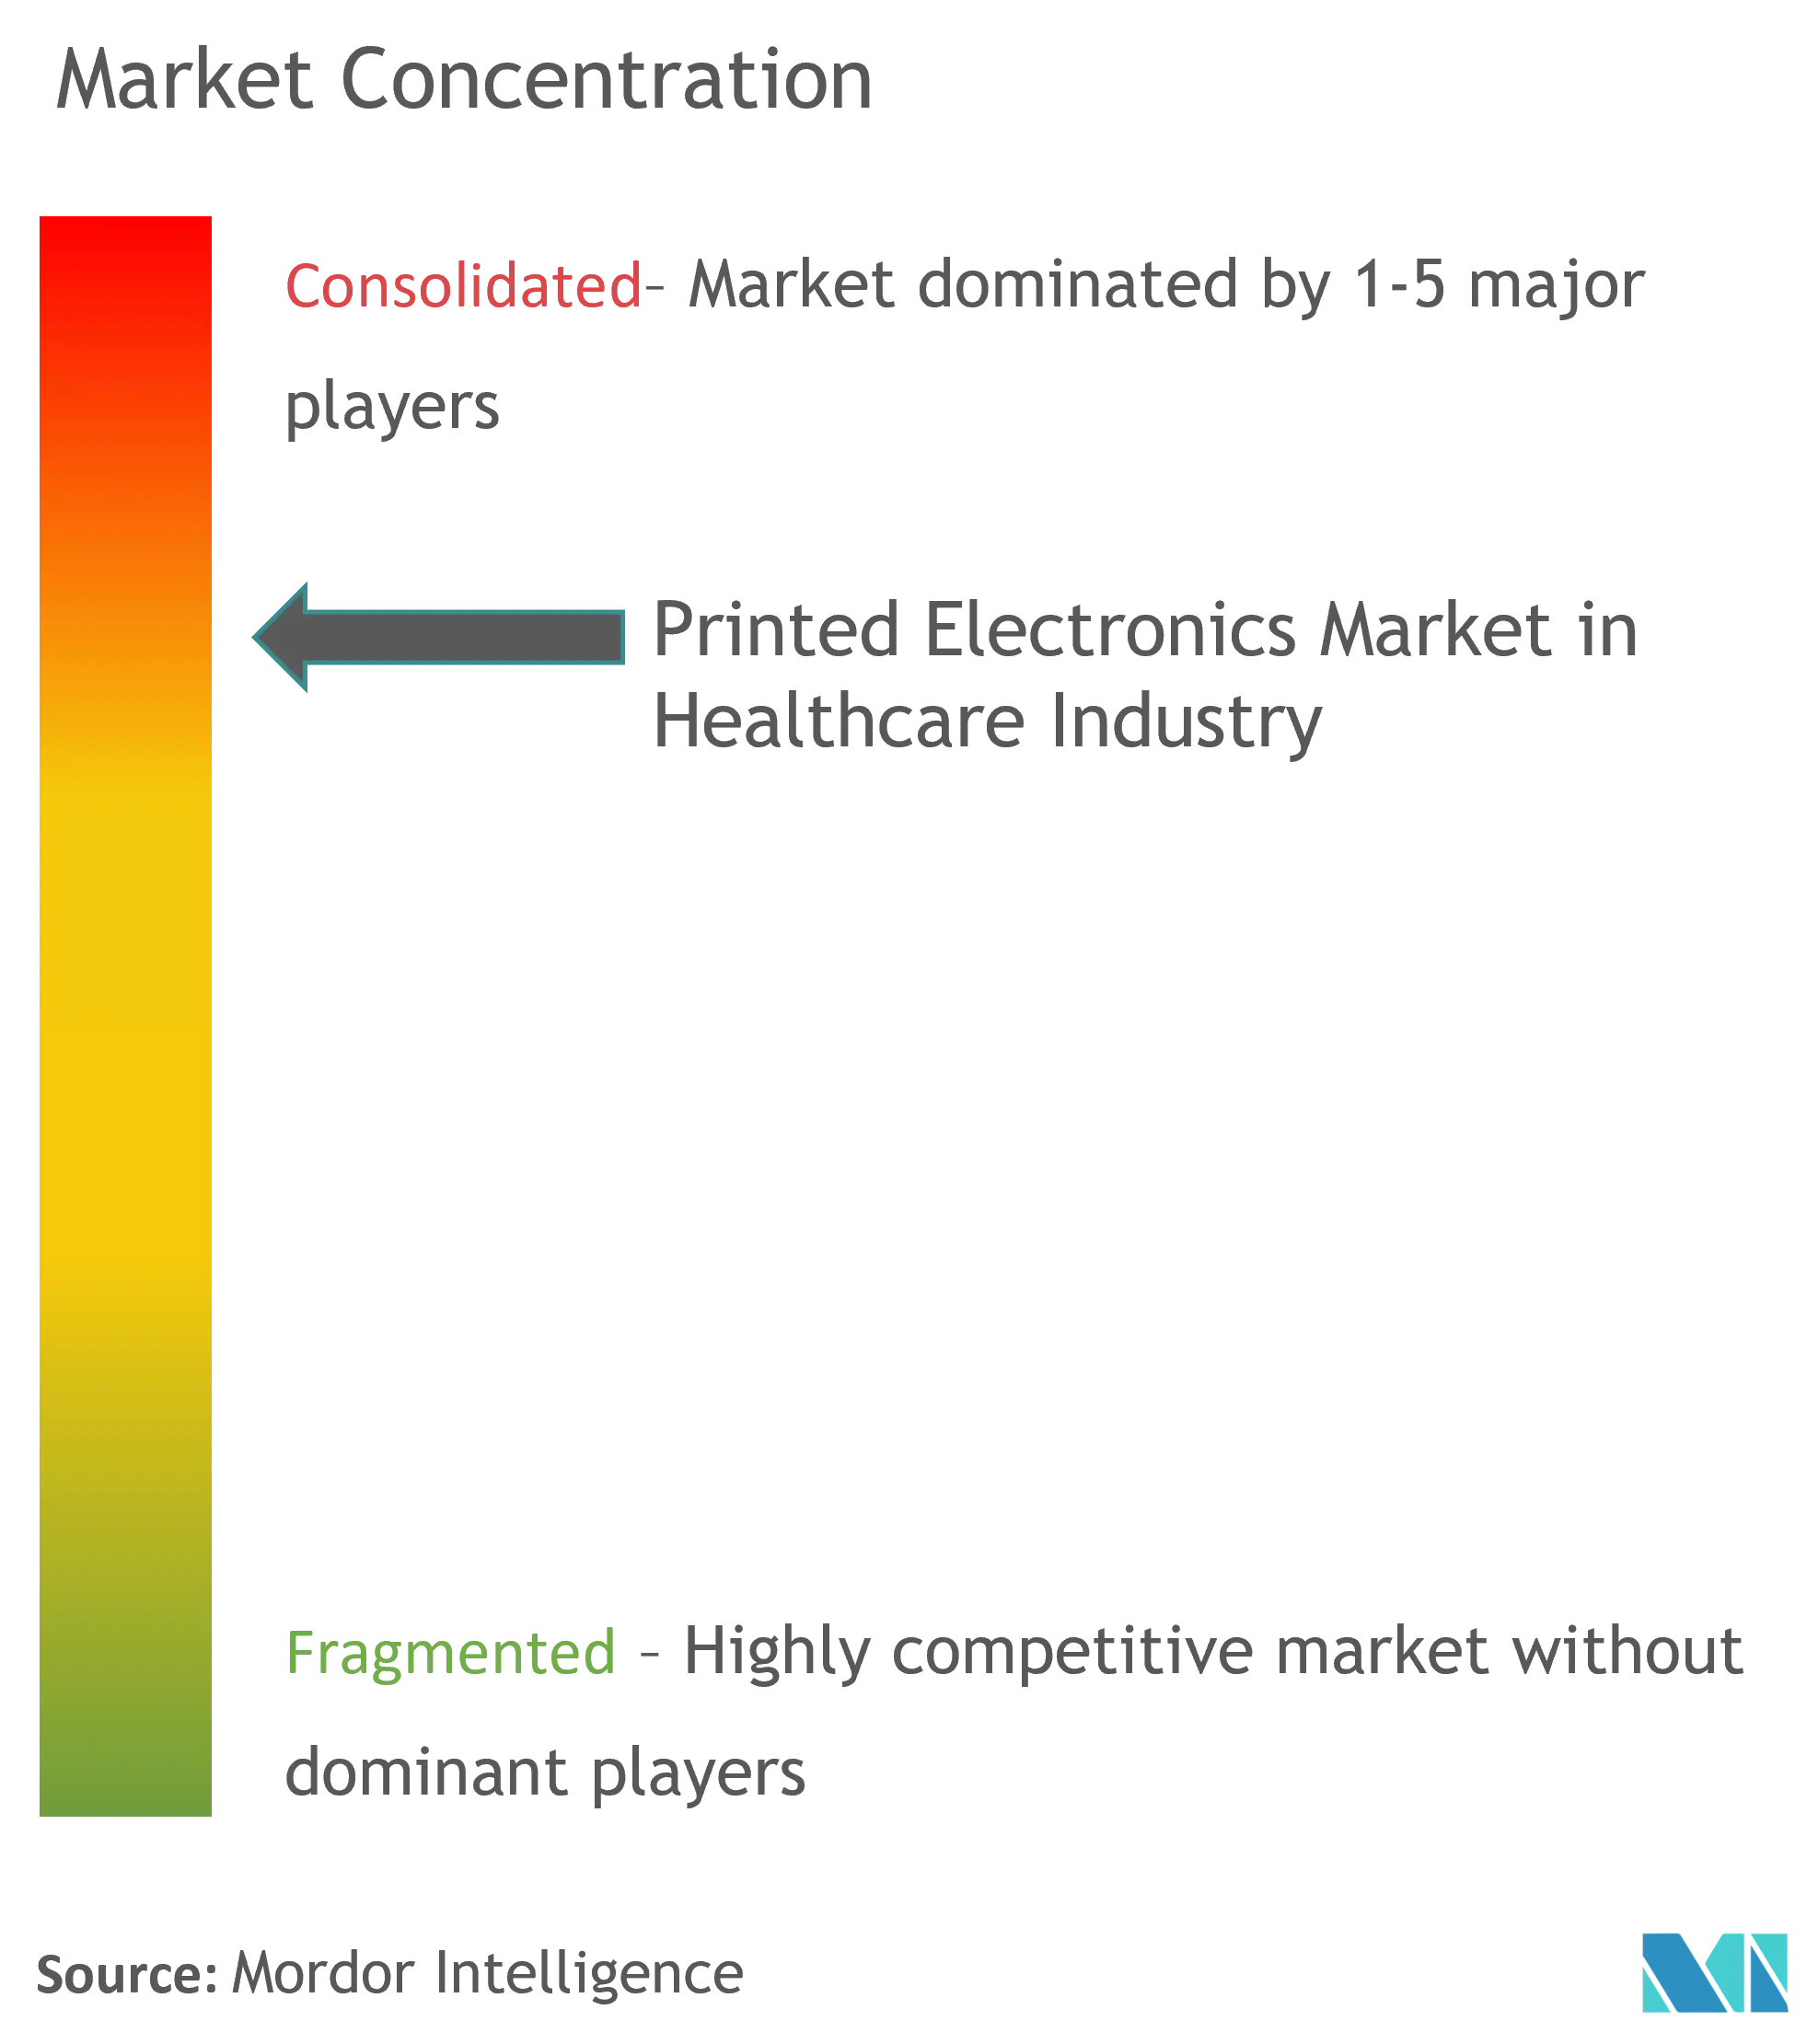 Markt für gedruckte Elektronik im Gesundheitswesen – Marktkonzentration